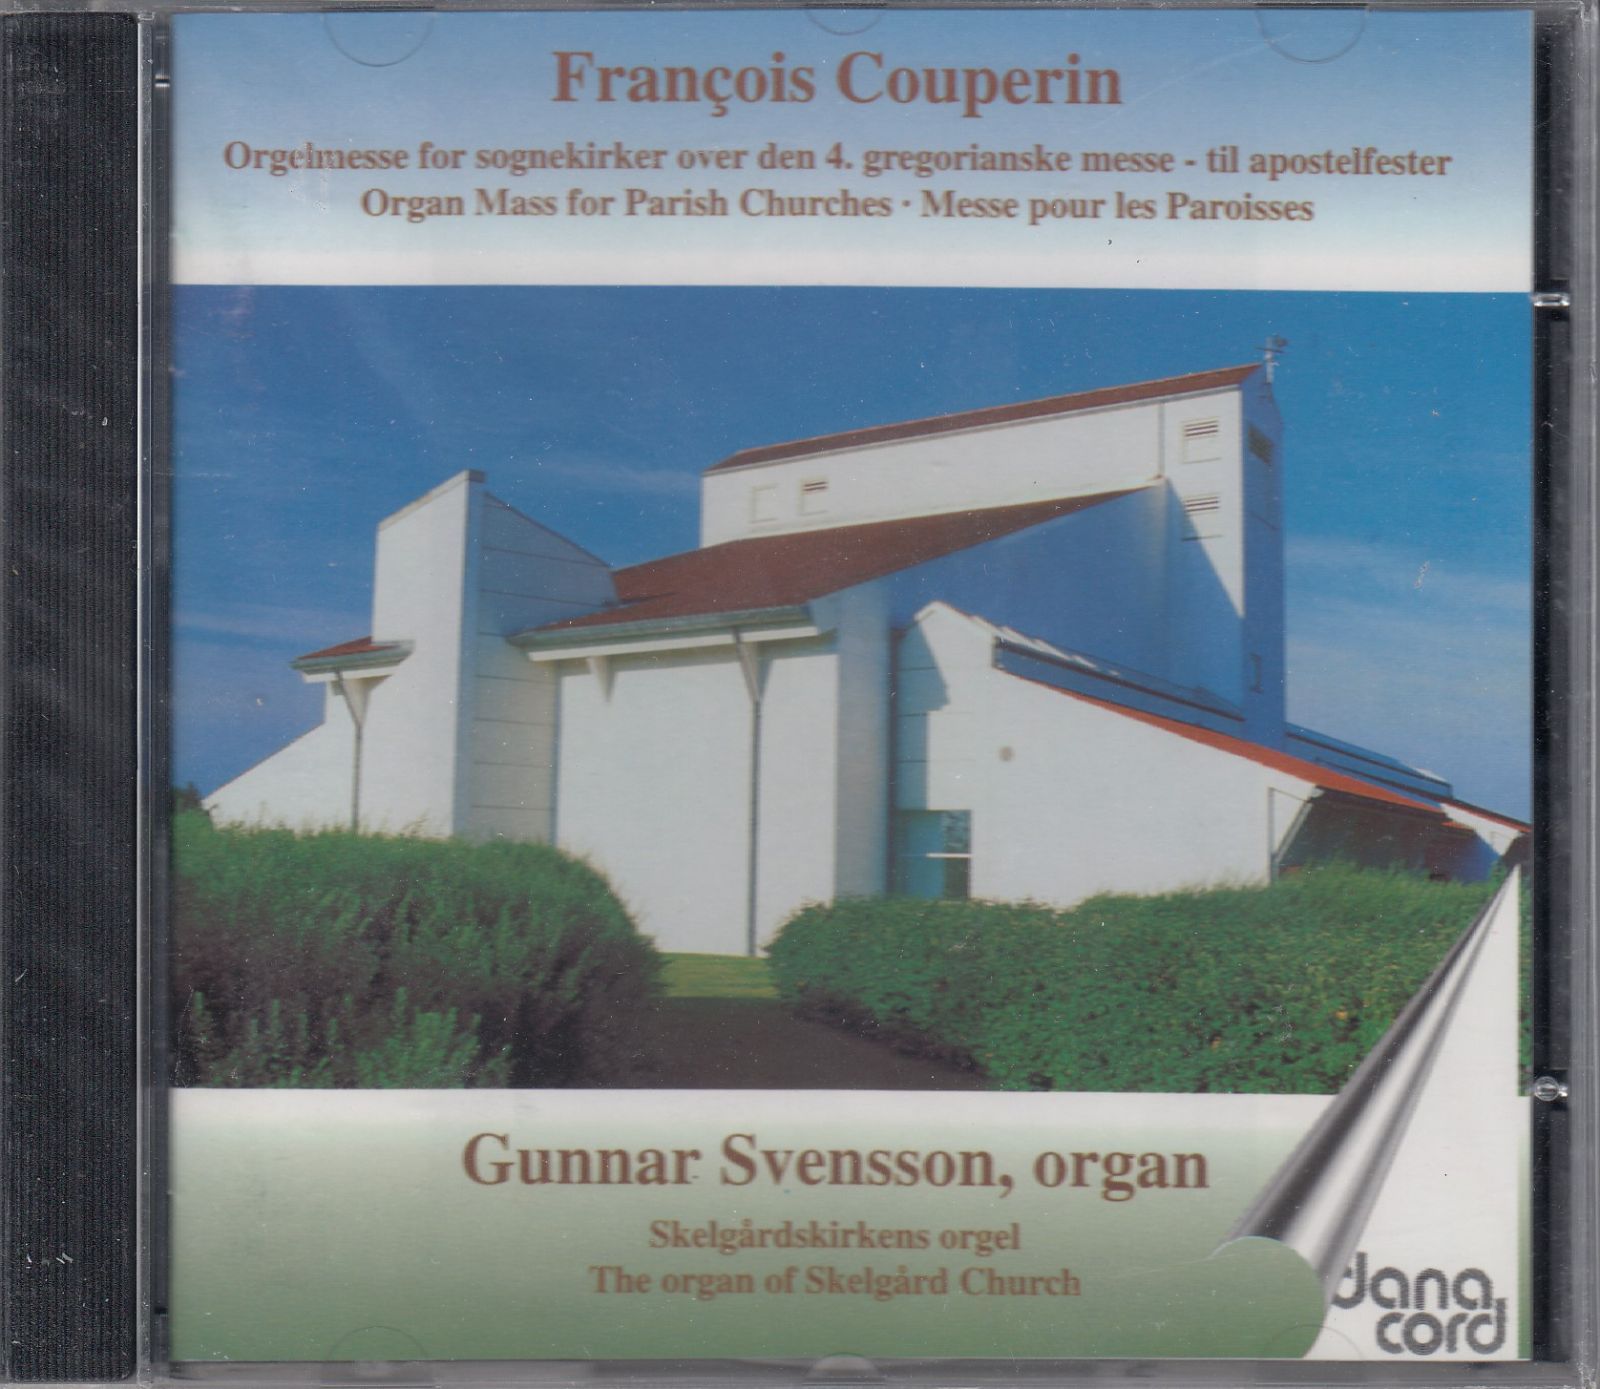 CD/Danacord]フランソワ・クープラン(1668-1733):教区のためのミサ曲/アラン・ディール(vocal)u0026マティアス・グローブ・マドセン(vocal)u0026アンダース・スコフステッド(t)u0026グンナー・スヴェンソン(org)  - メルカリ